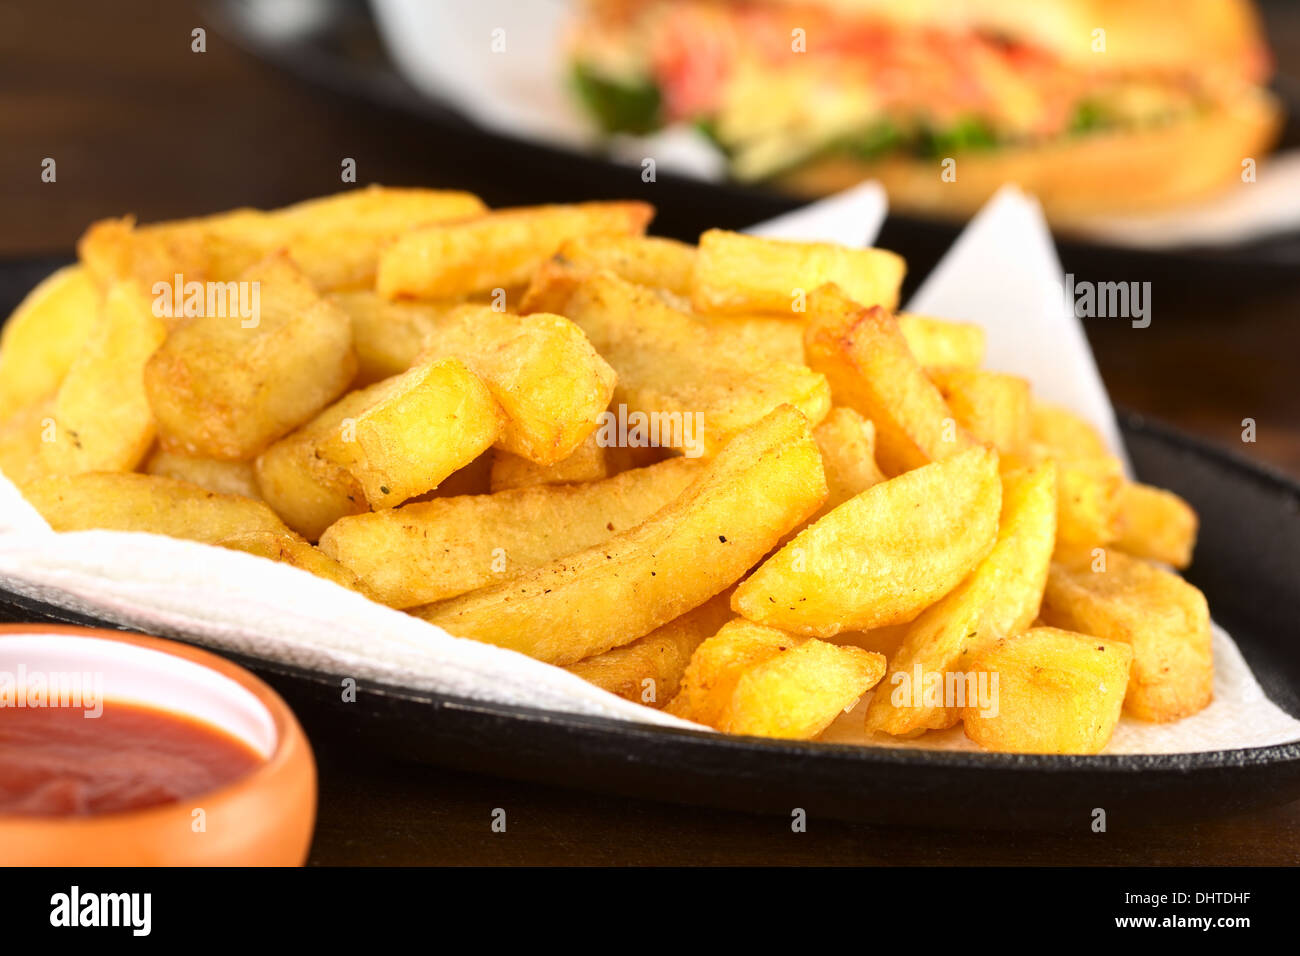 Les frites avec du ketchup (Selective Focus Focus, un tiers dans les frites) Banque D'Images